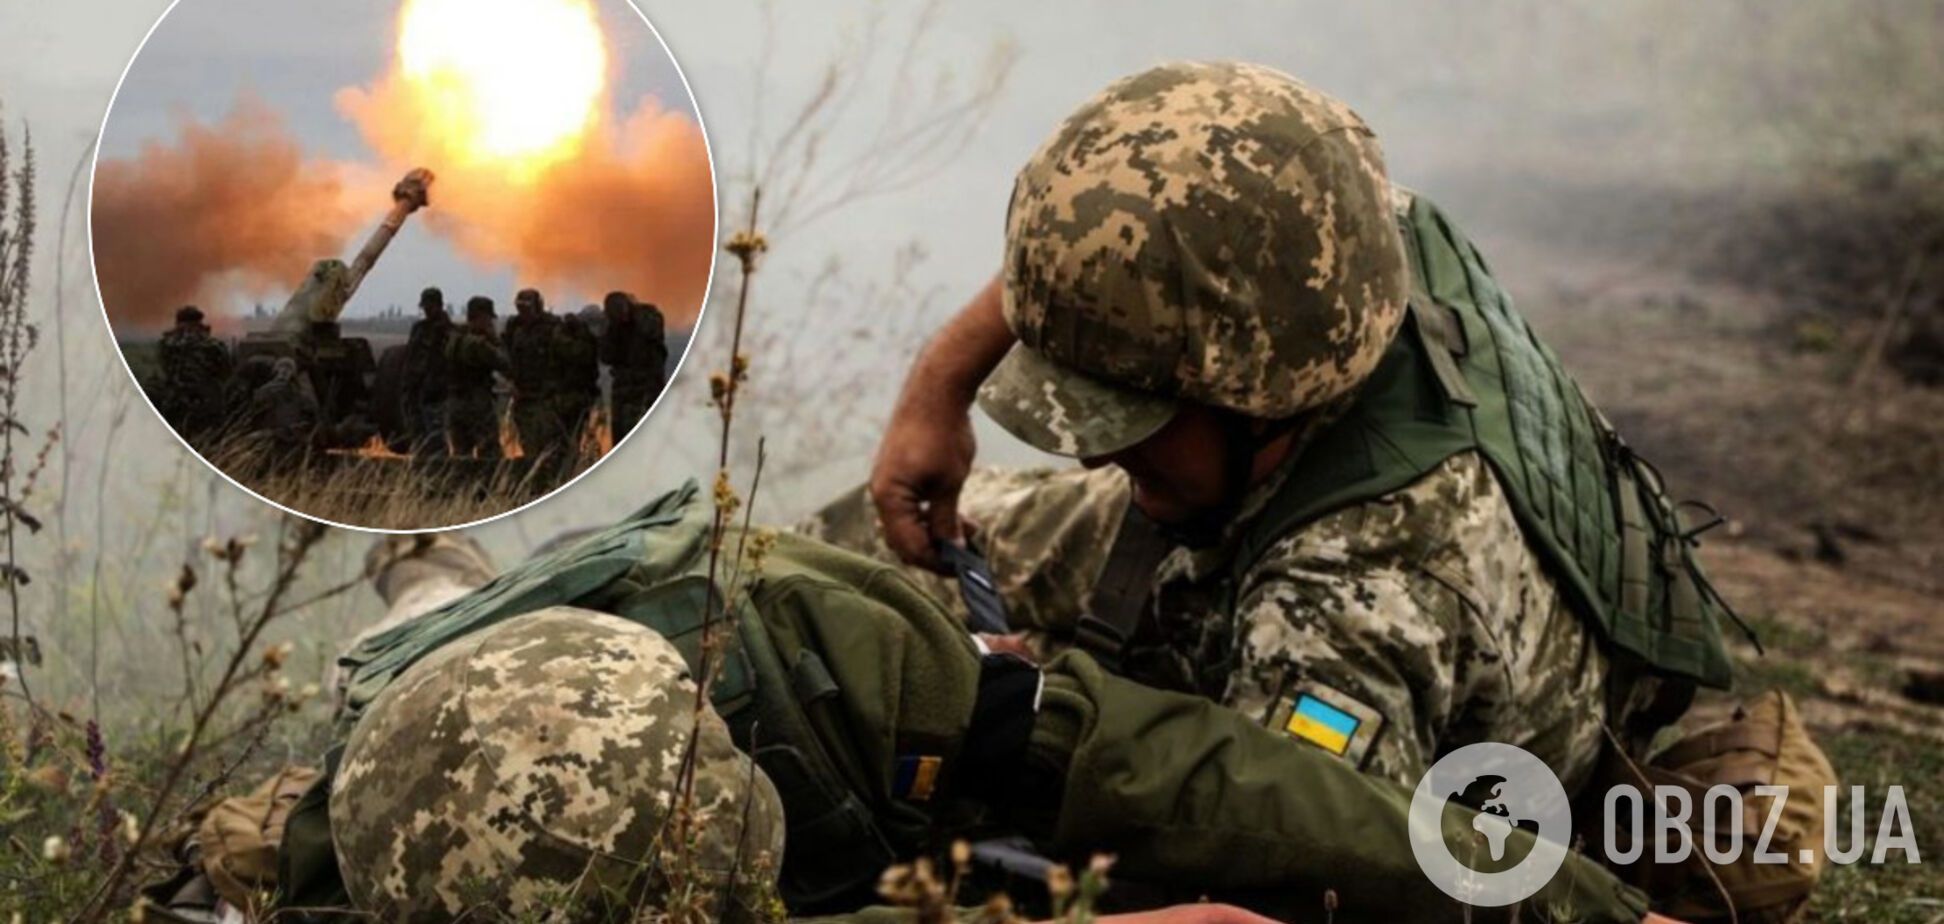 Найманці Путіна влаштували 'пекло' на Донбасі: поранено двох воїнів ЗСУ